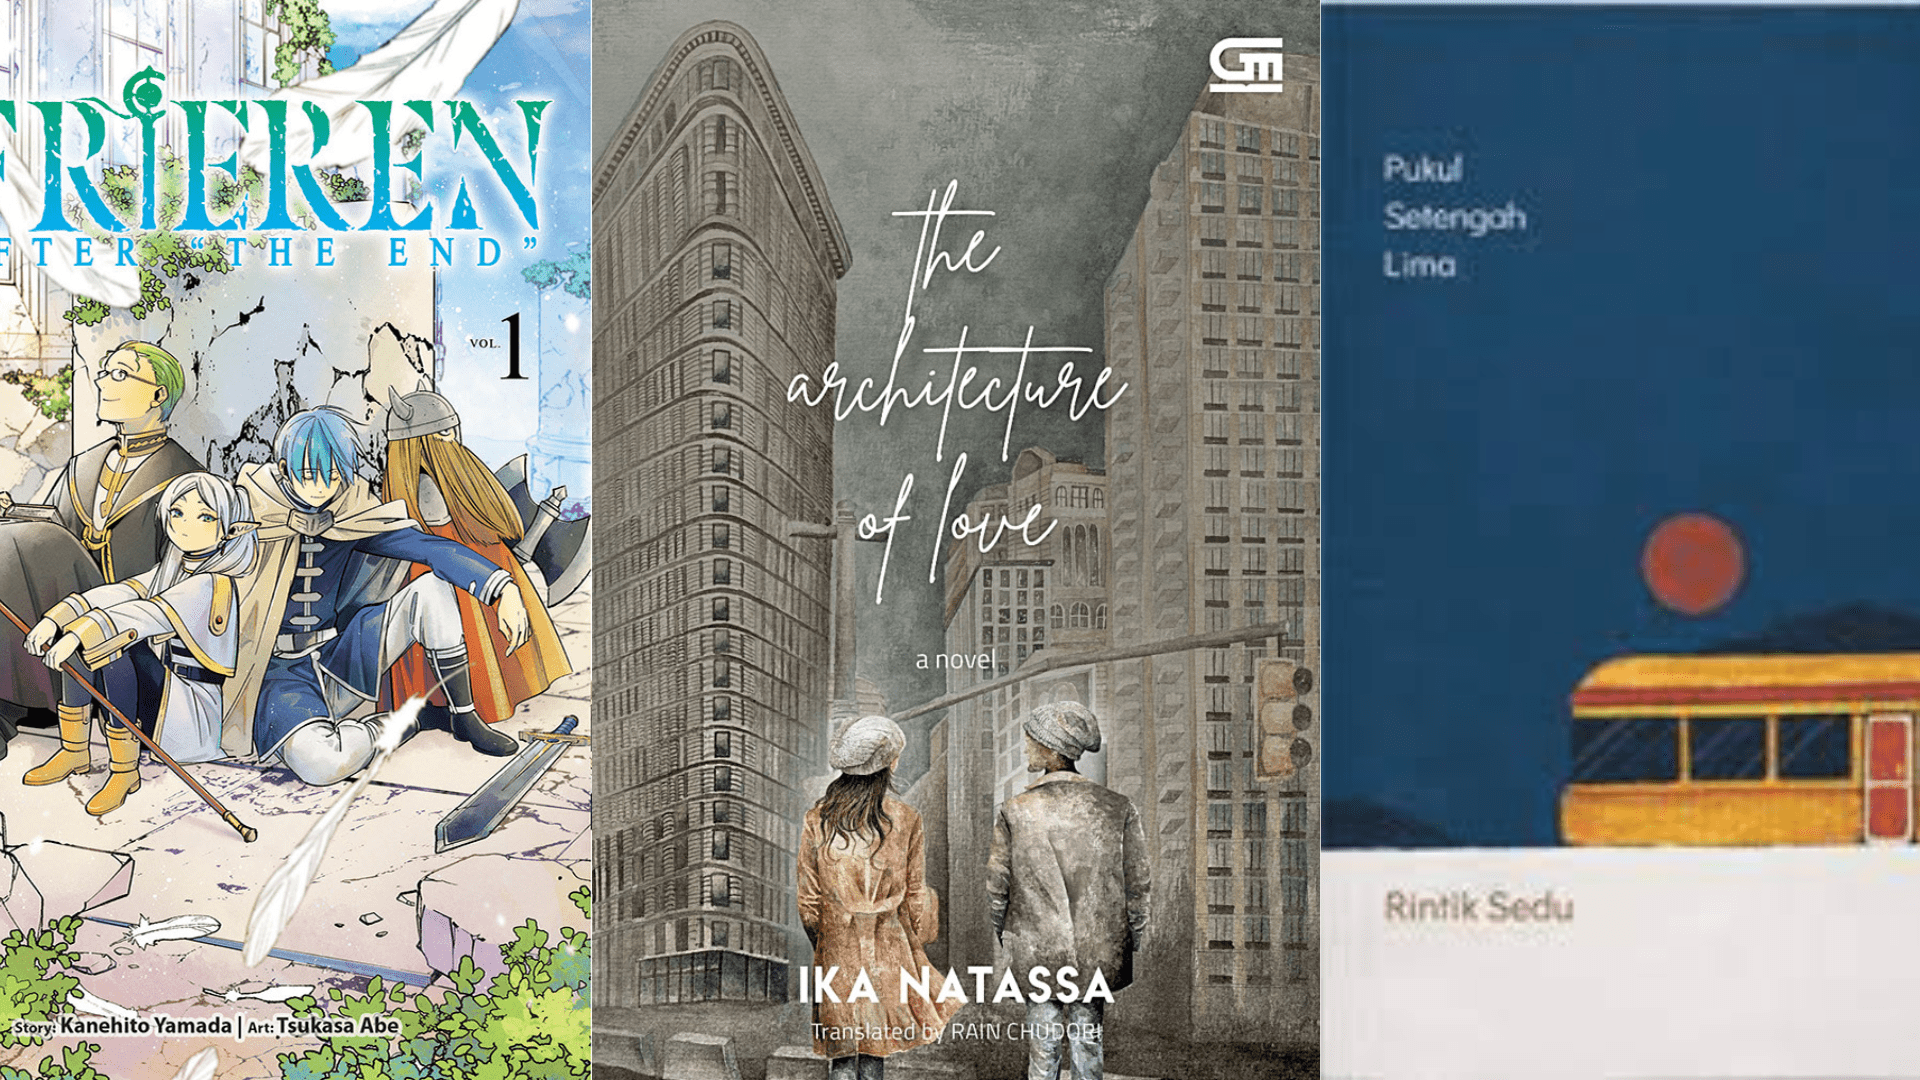 Best Seller Bulan Ini! Inilah 3 Rekomendasi Novel Terbaru yang Sedang Jadi Perbincangan Karena Kualitasnya